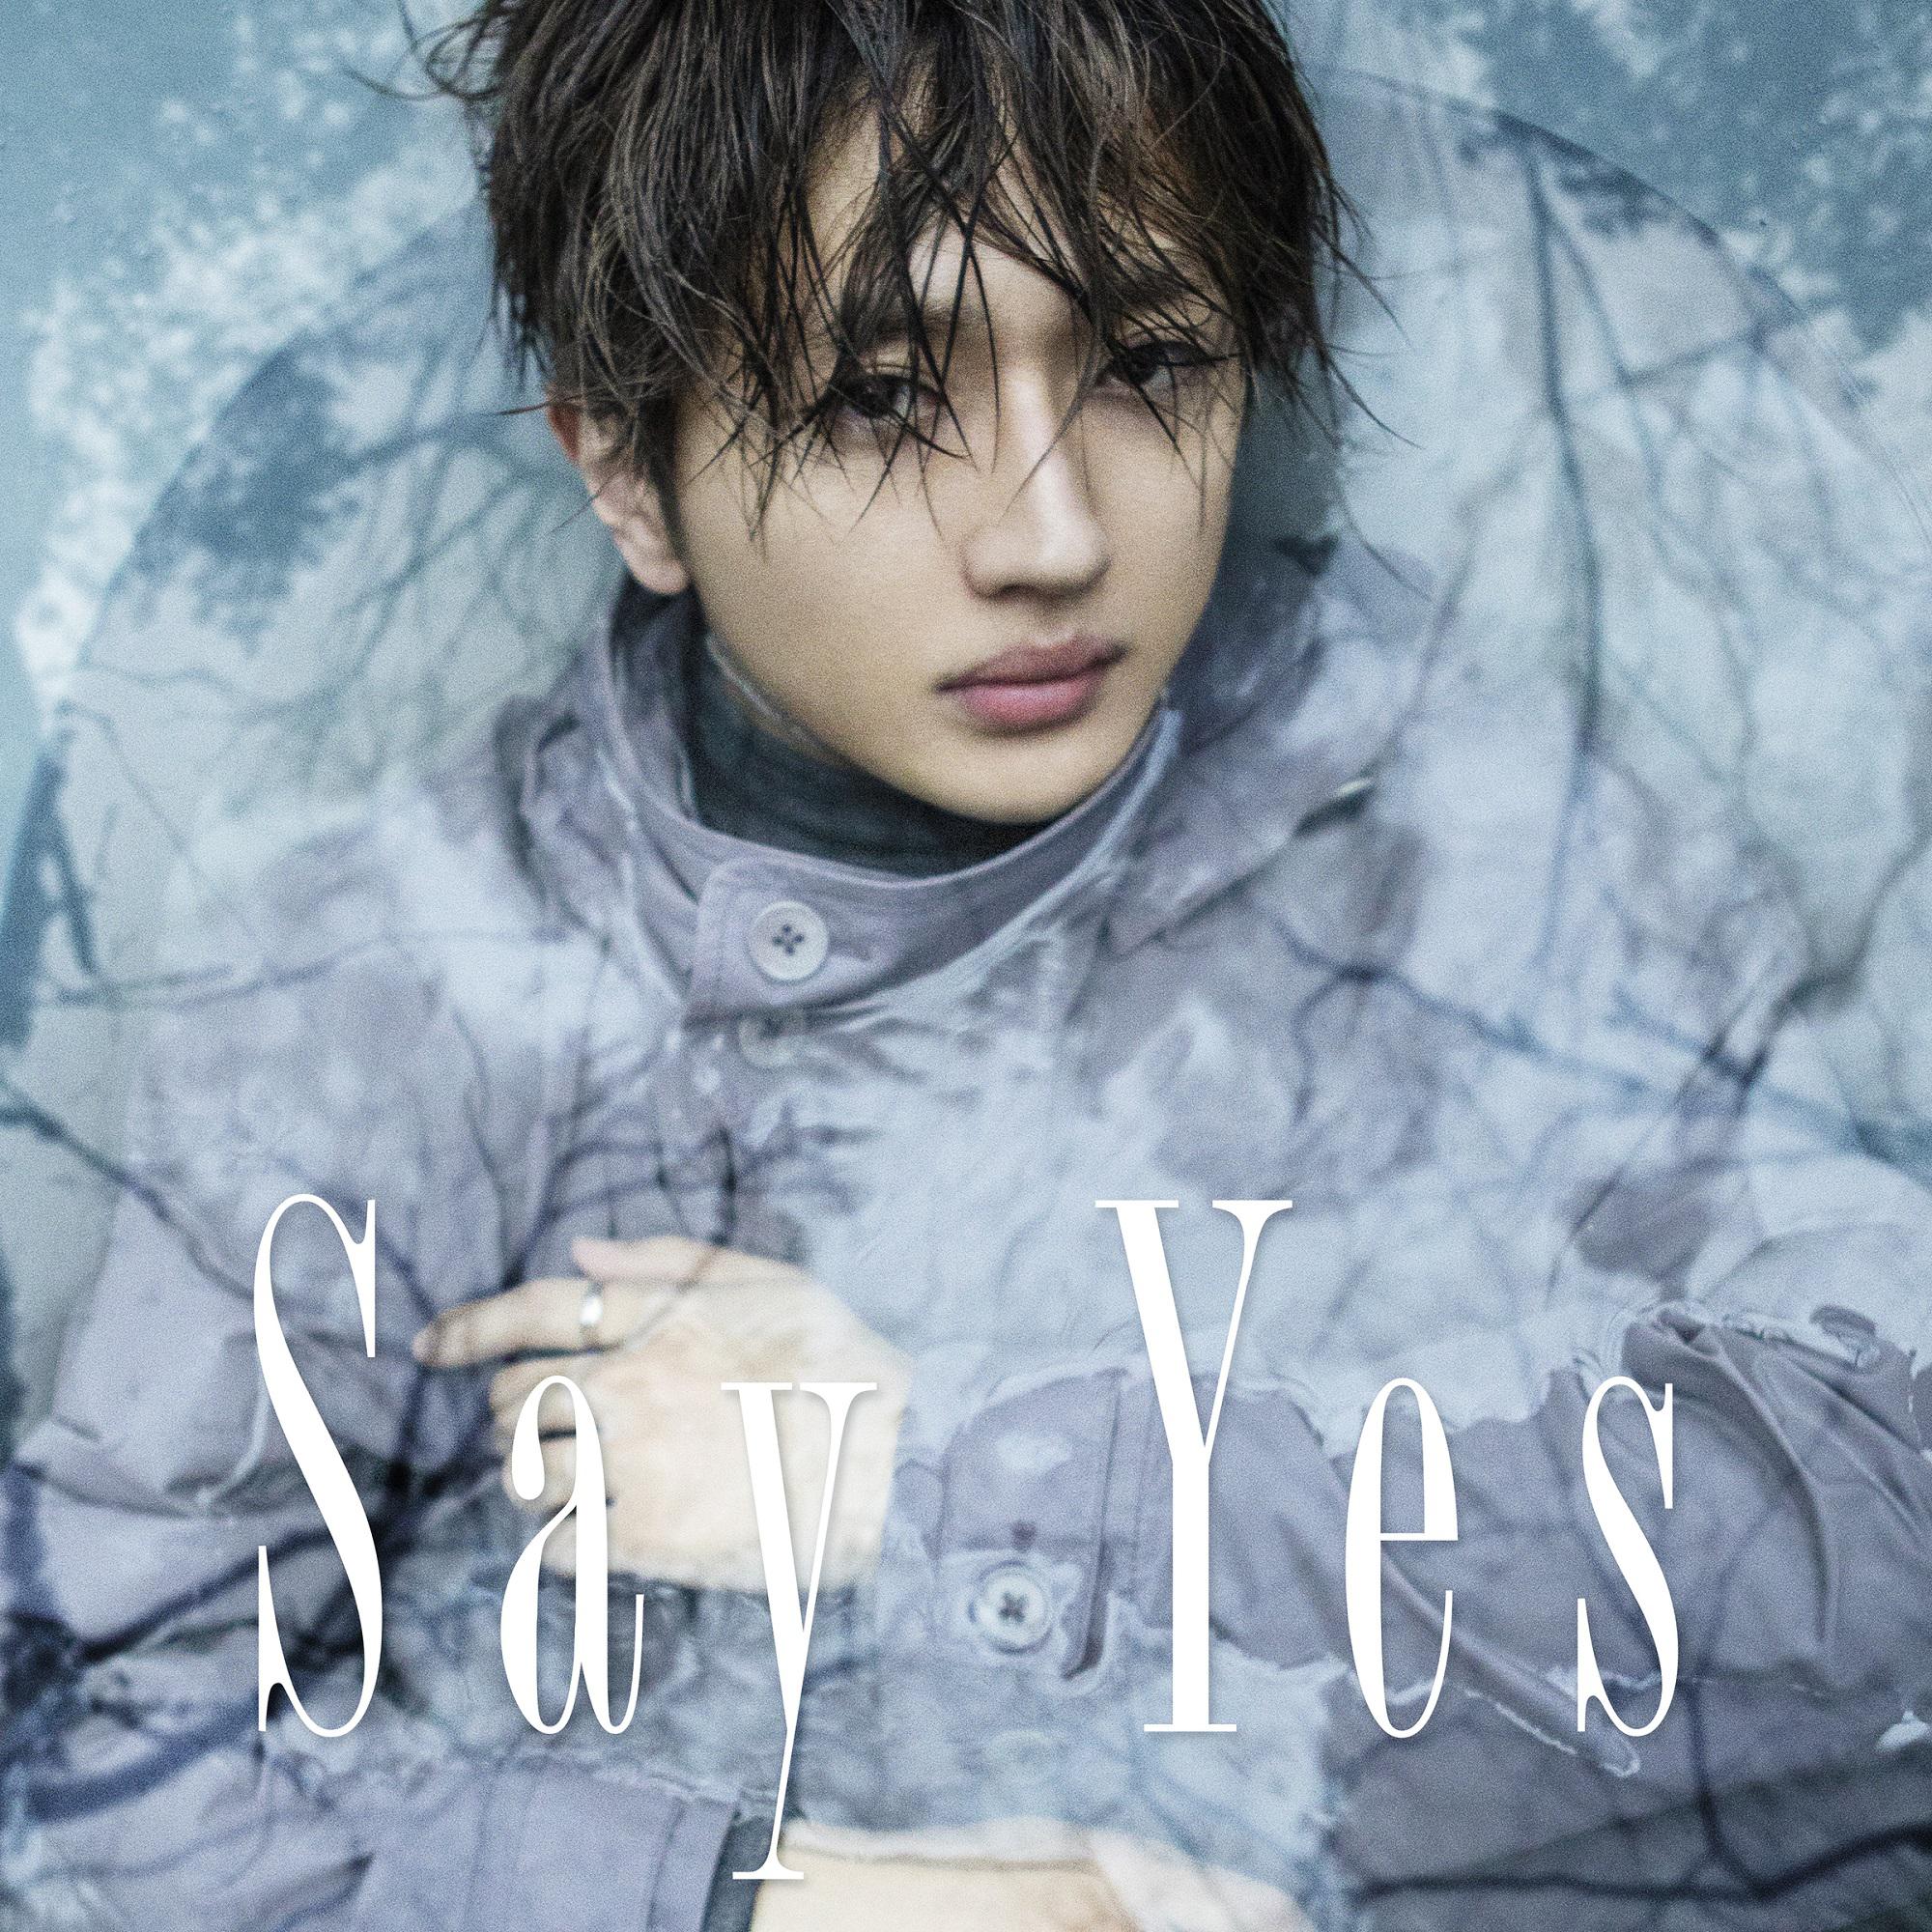 Say Yes - Nissy(西島隆弘) - 单曲- 网易云音乐